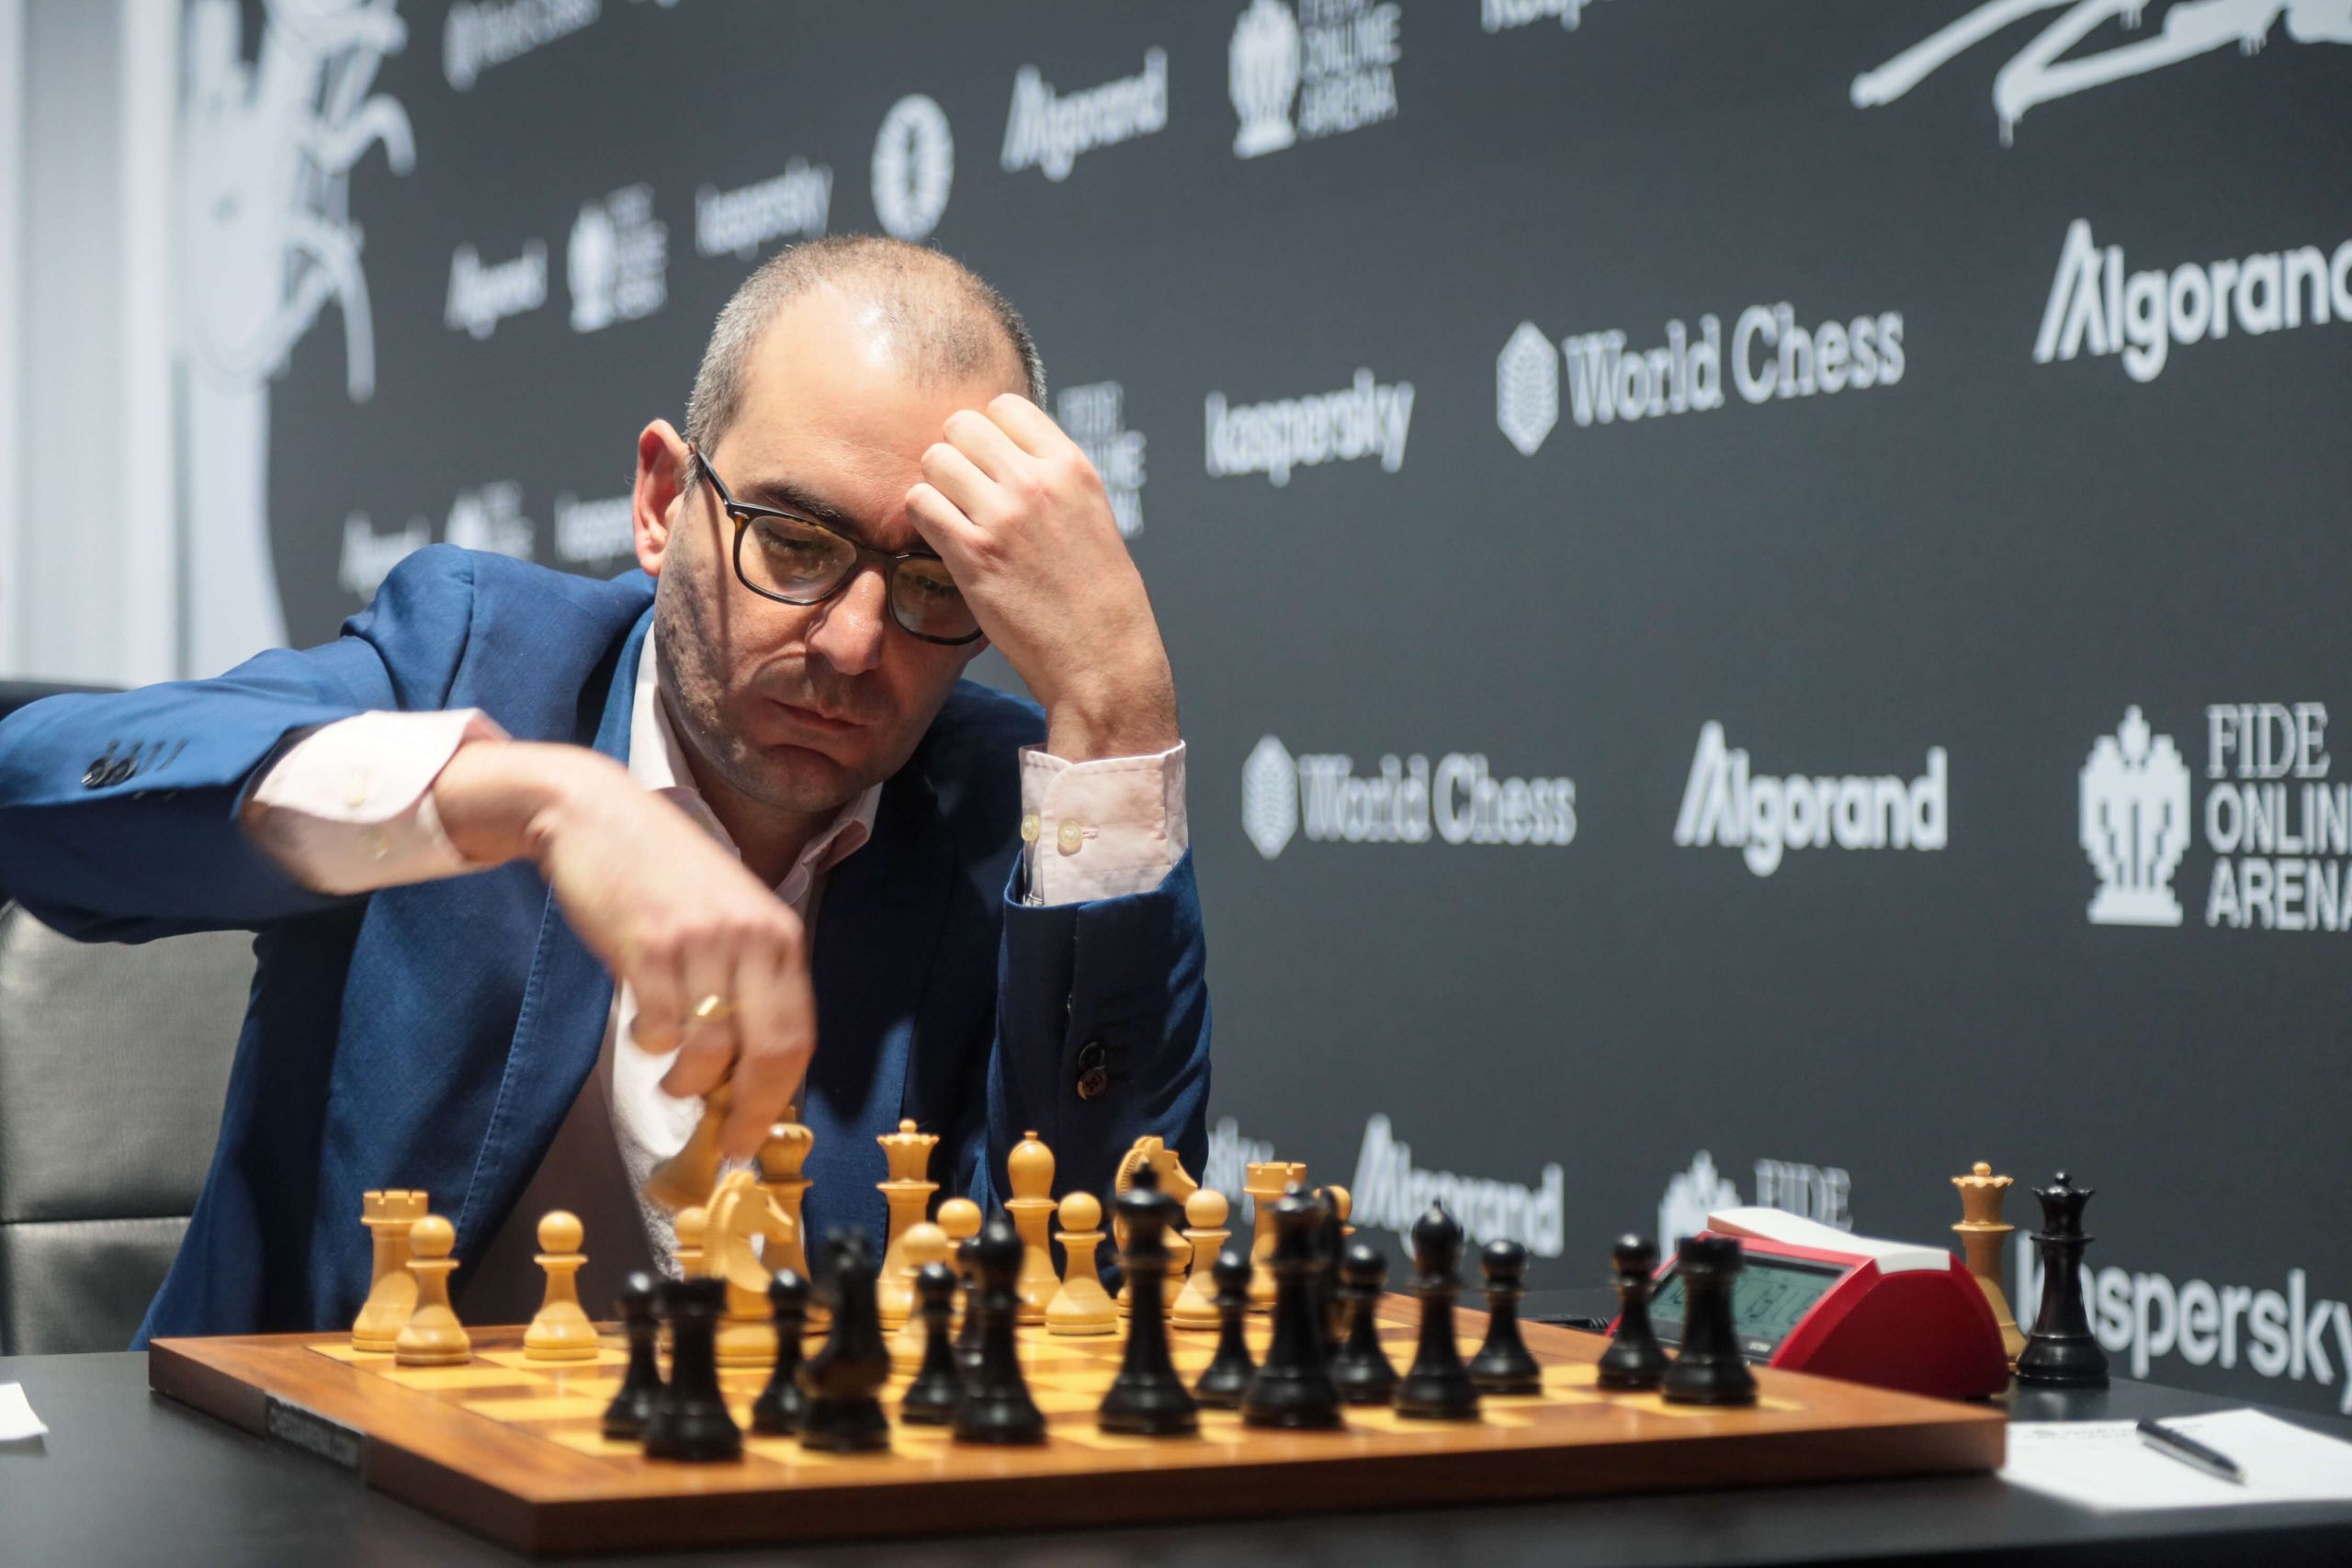 So trounces Vachier-Lagrave, boosts FIDE Grand Prix title run in Berlin